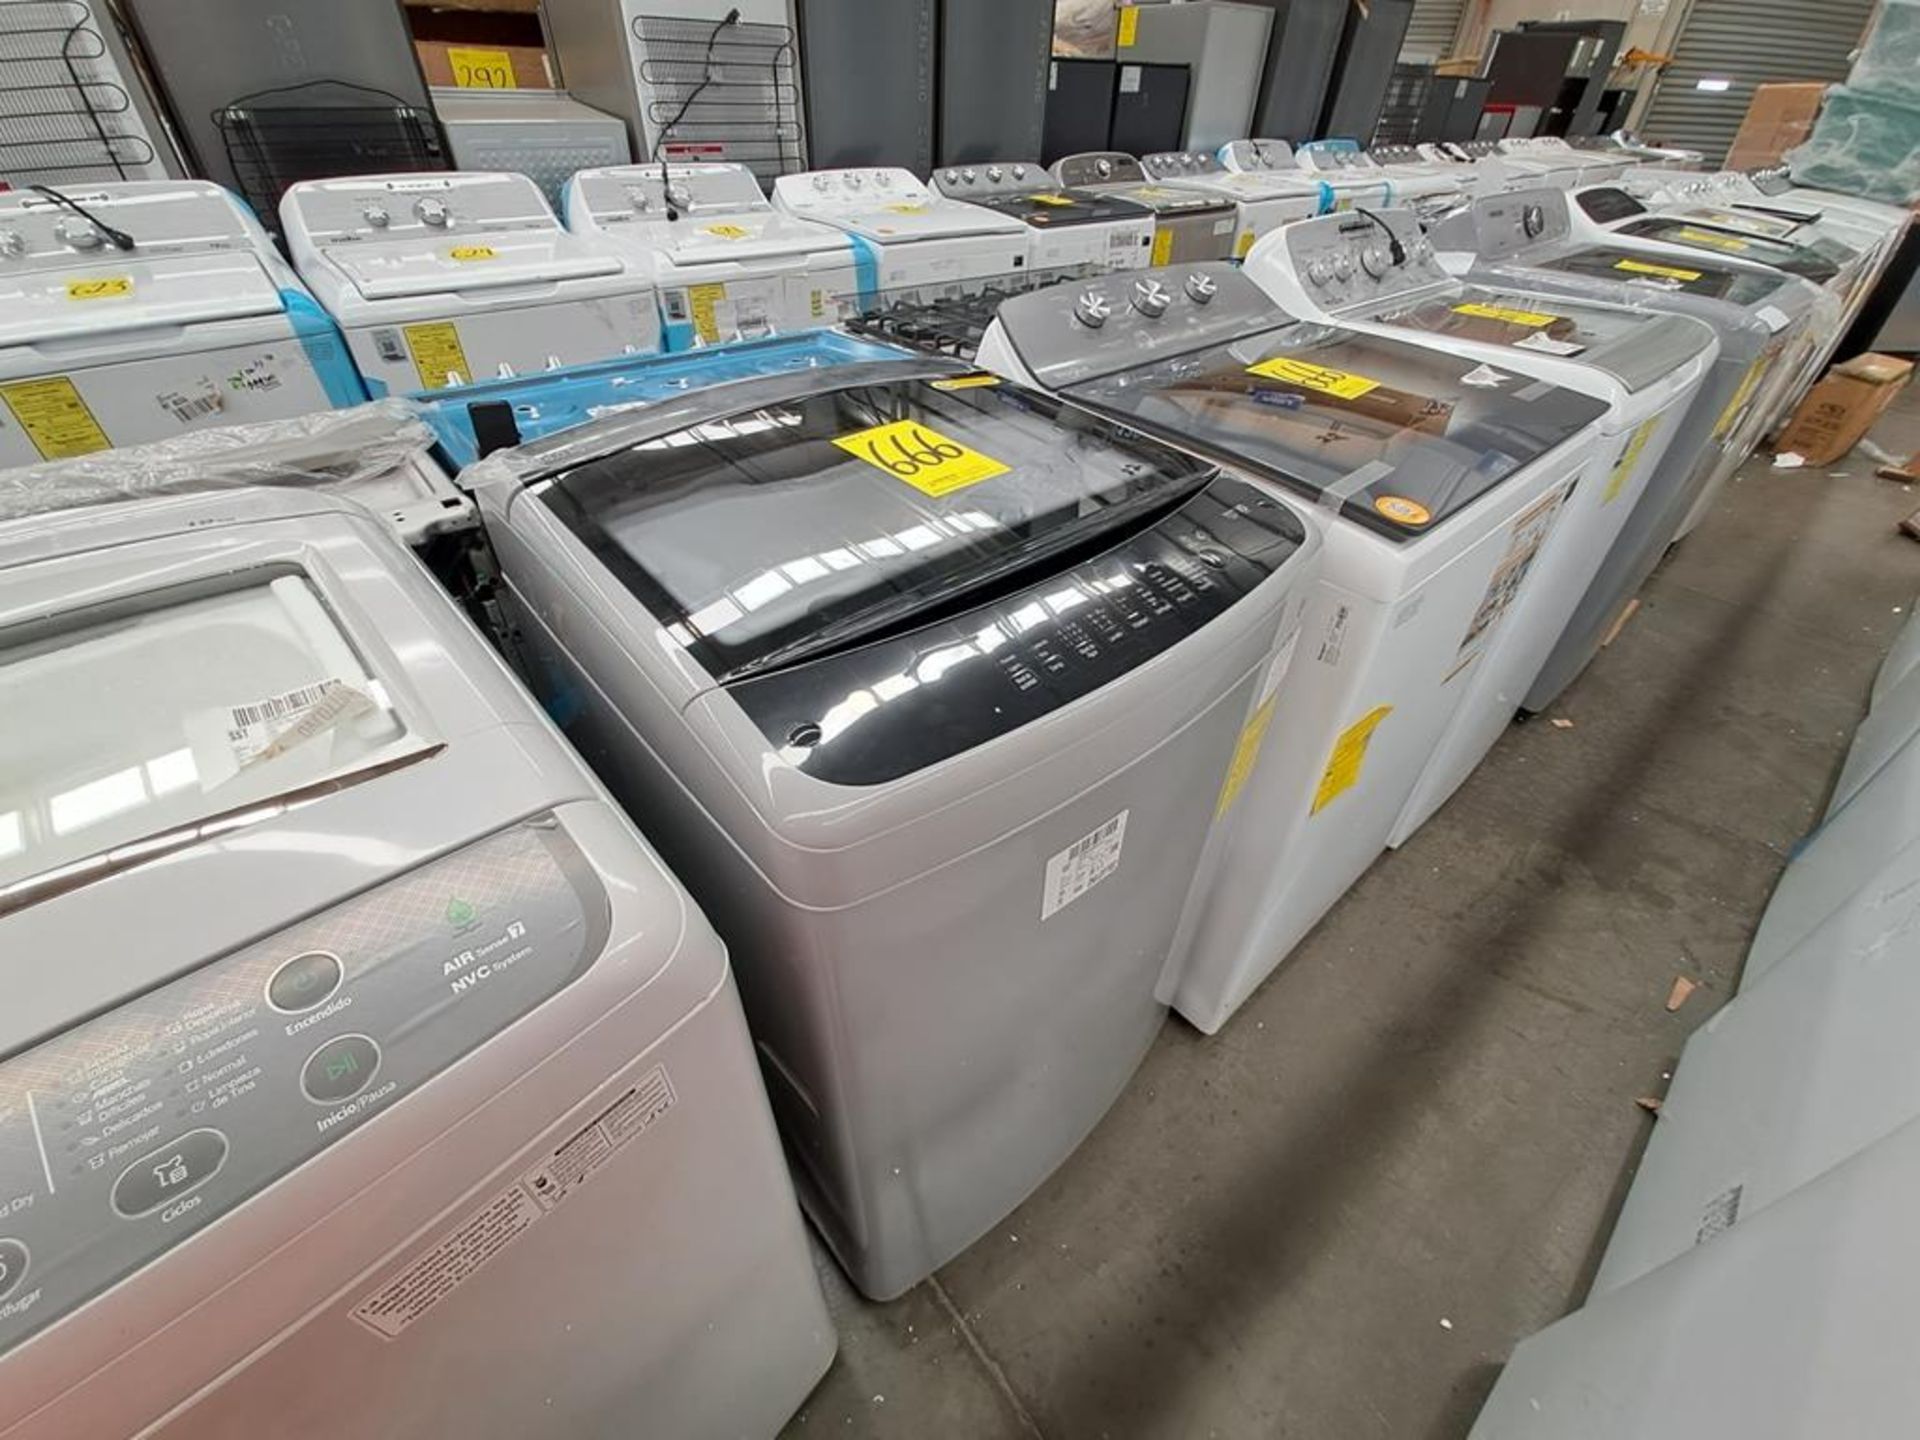 Lote de 2 lavadoras contiene: 1 Lavadora de 18 KG Marca LG, Modelo WT18DS8P, Serie ND, Color GRIS; - Image 4 of 8